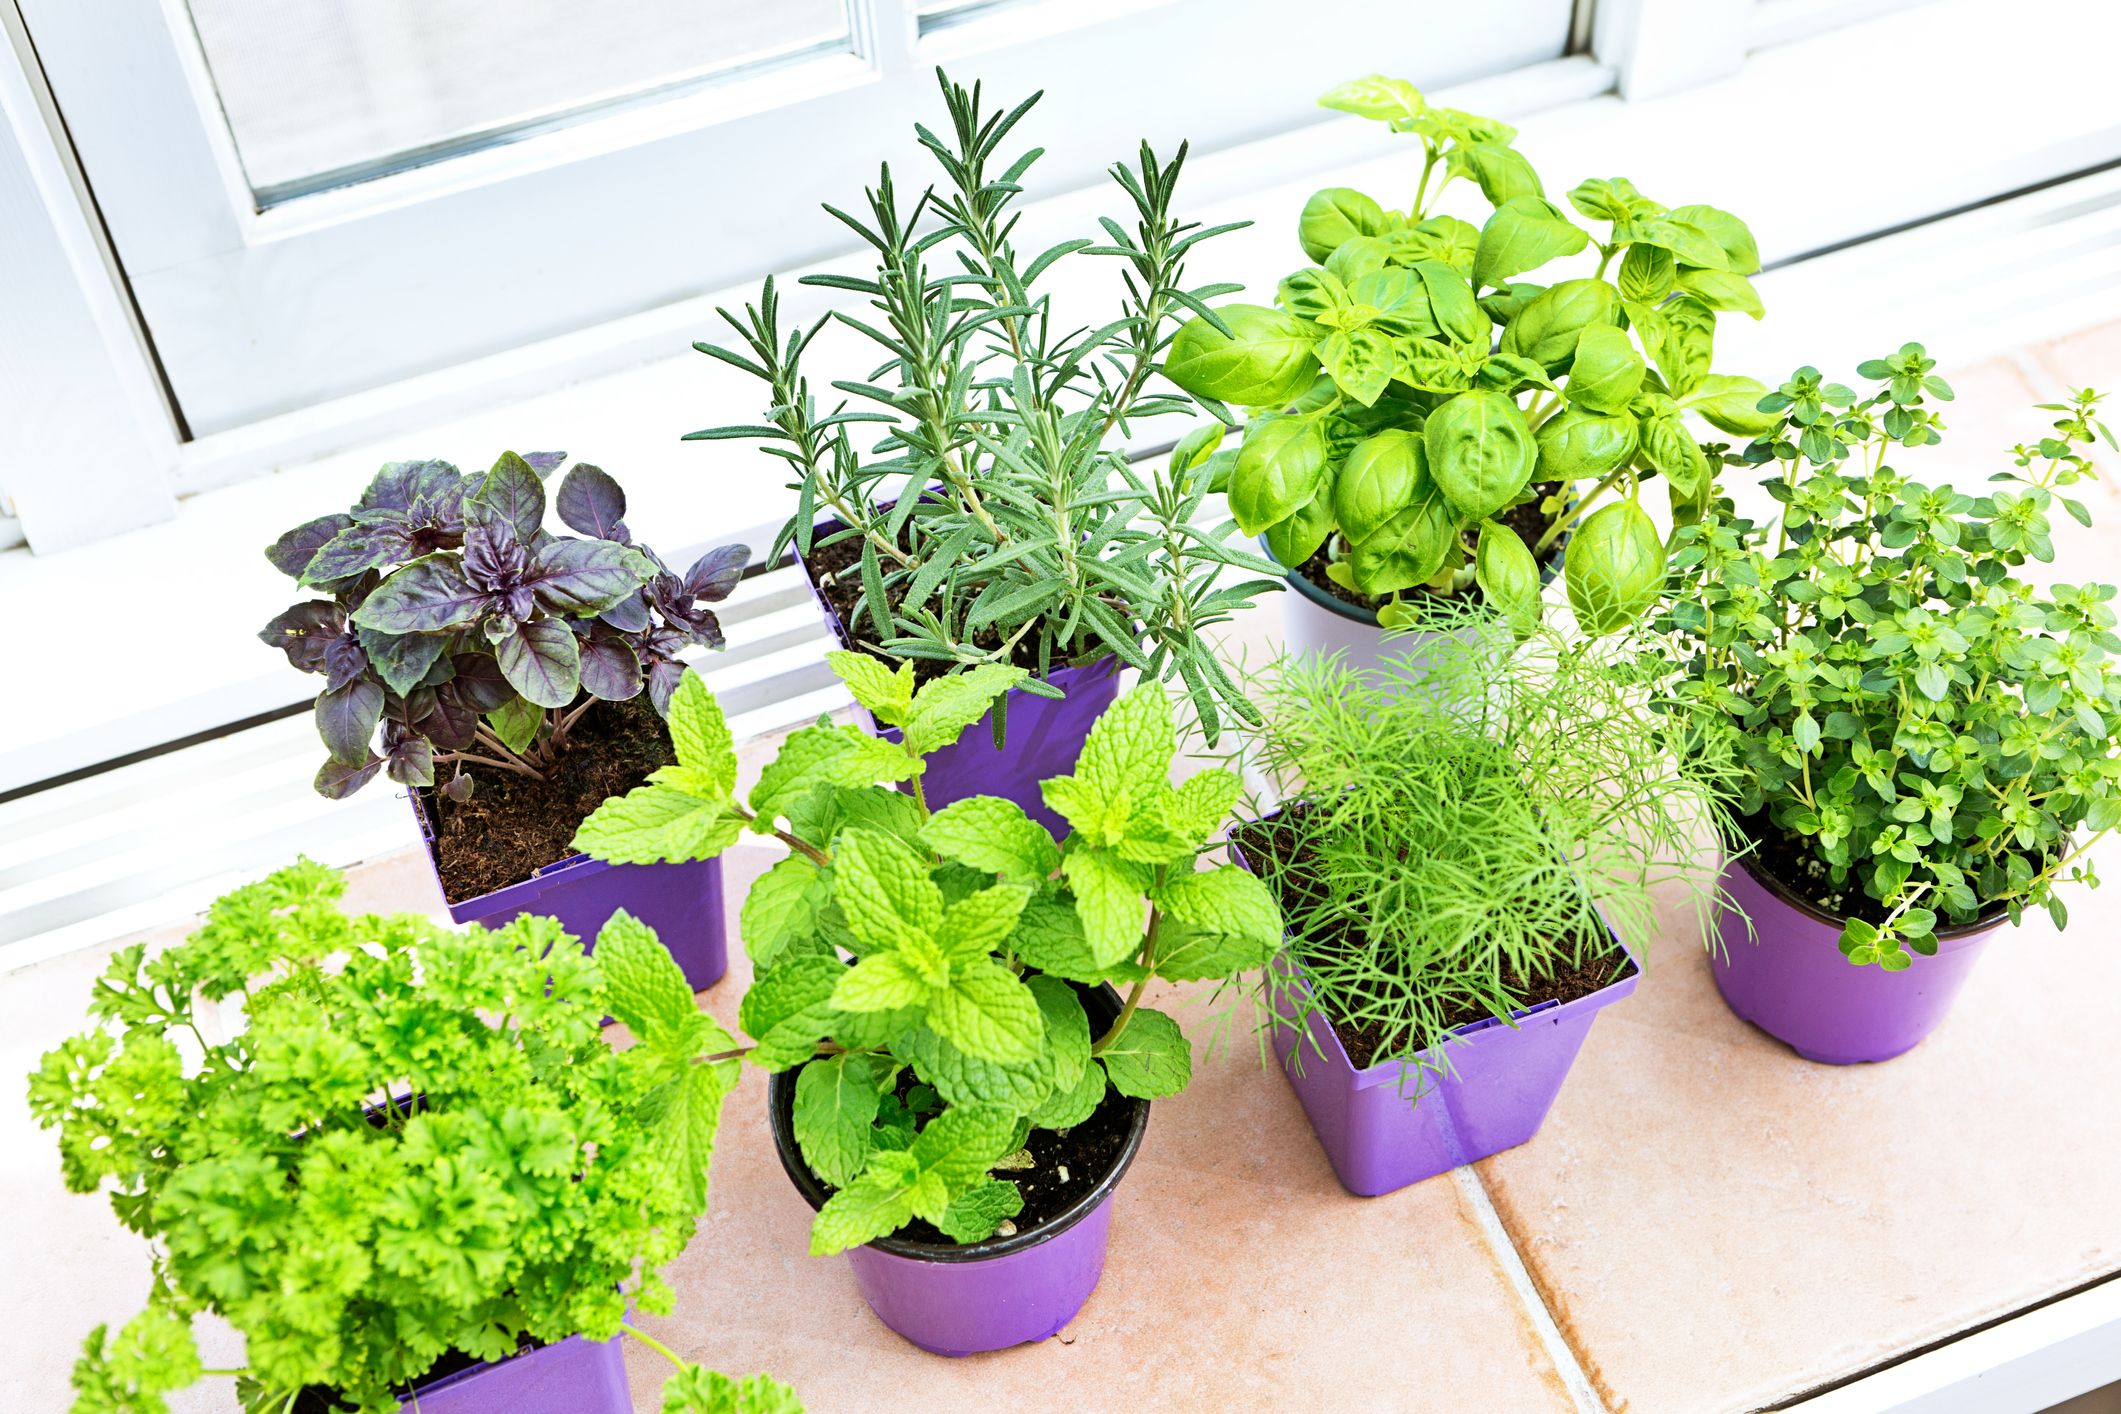 How To Start An Indoor Herb Garden - Car Insurance